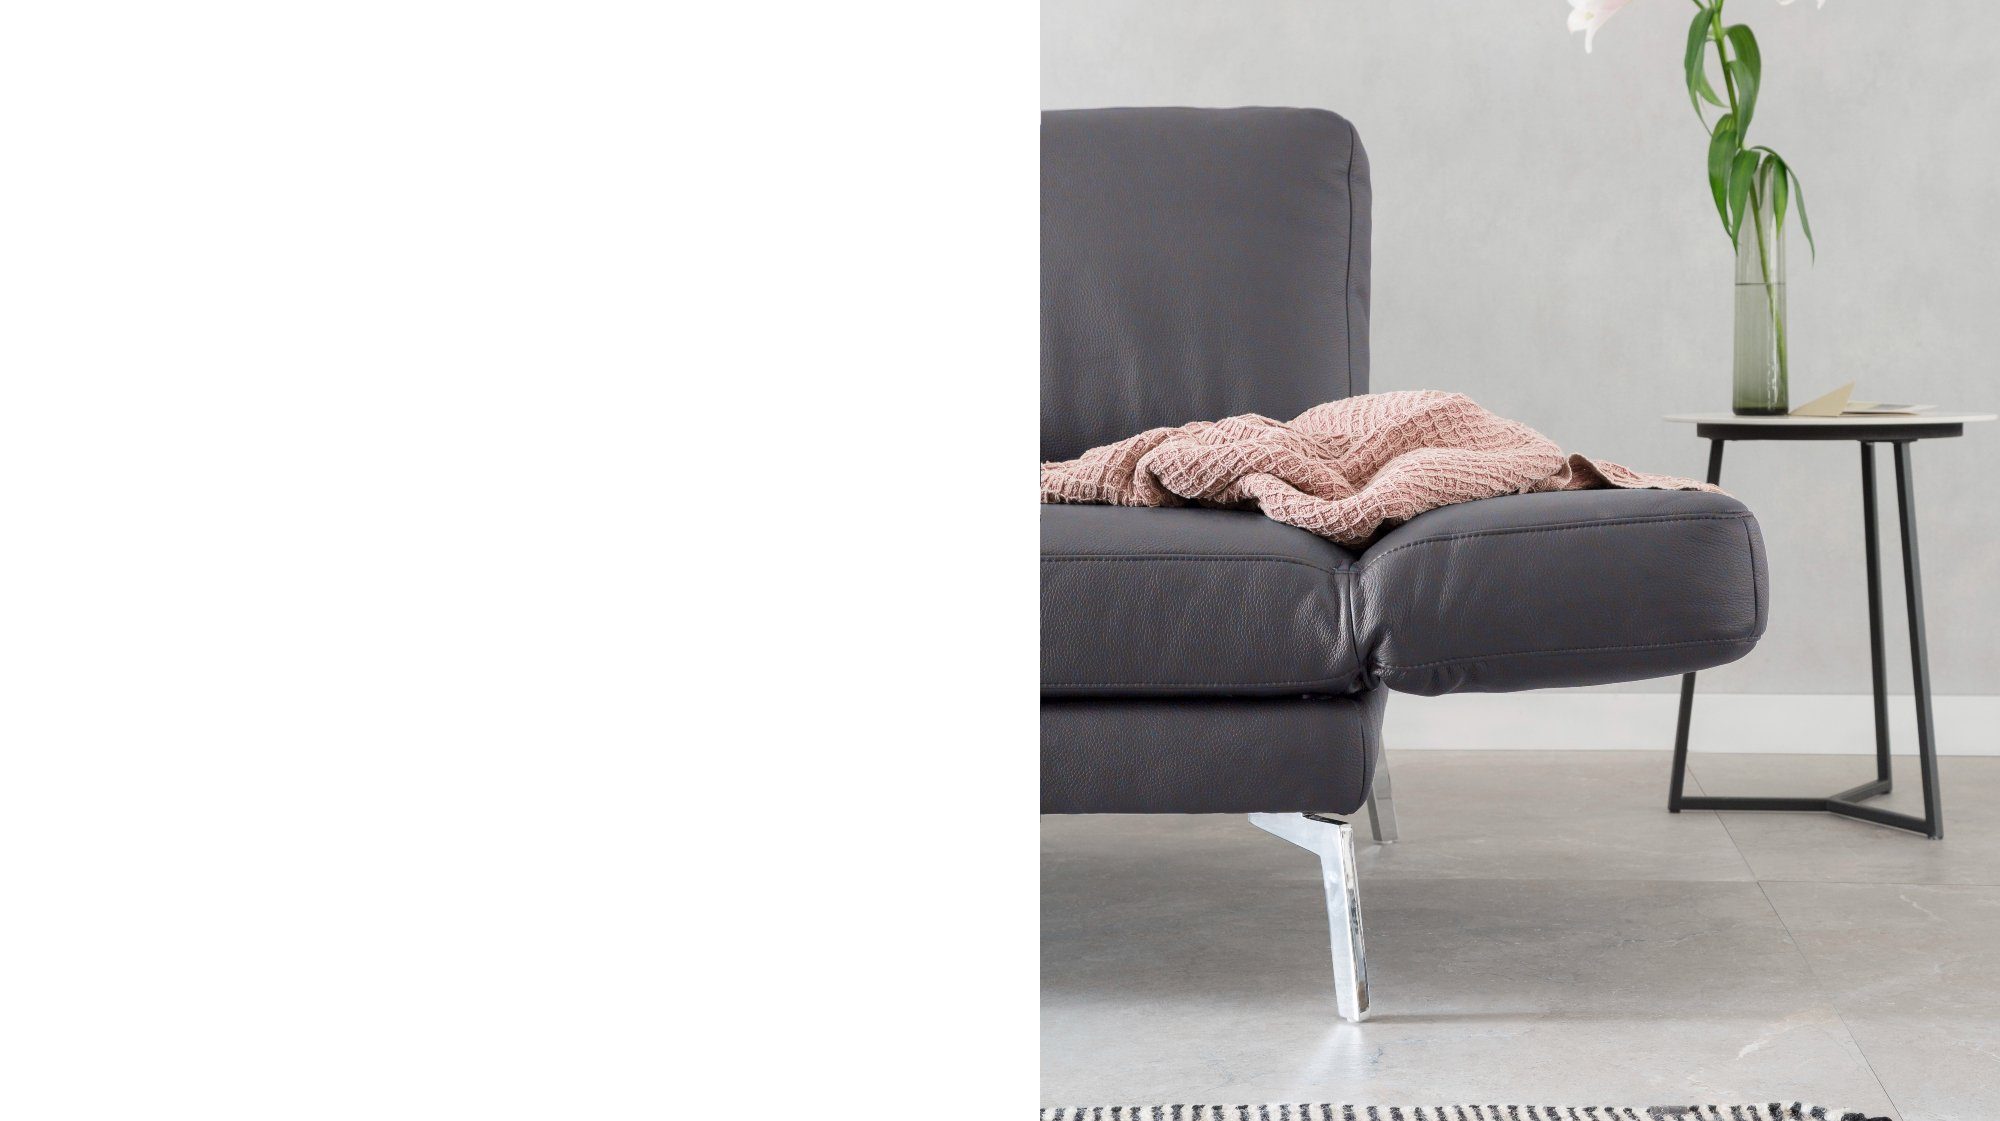 Farben HURRICANE, KAWOLA 2-Sitzer dunkelgrau Leder Sofa verschiedene